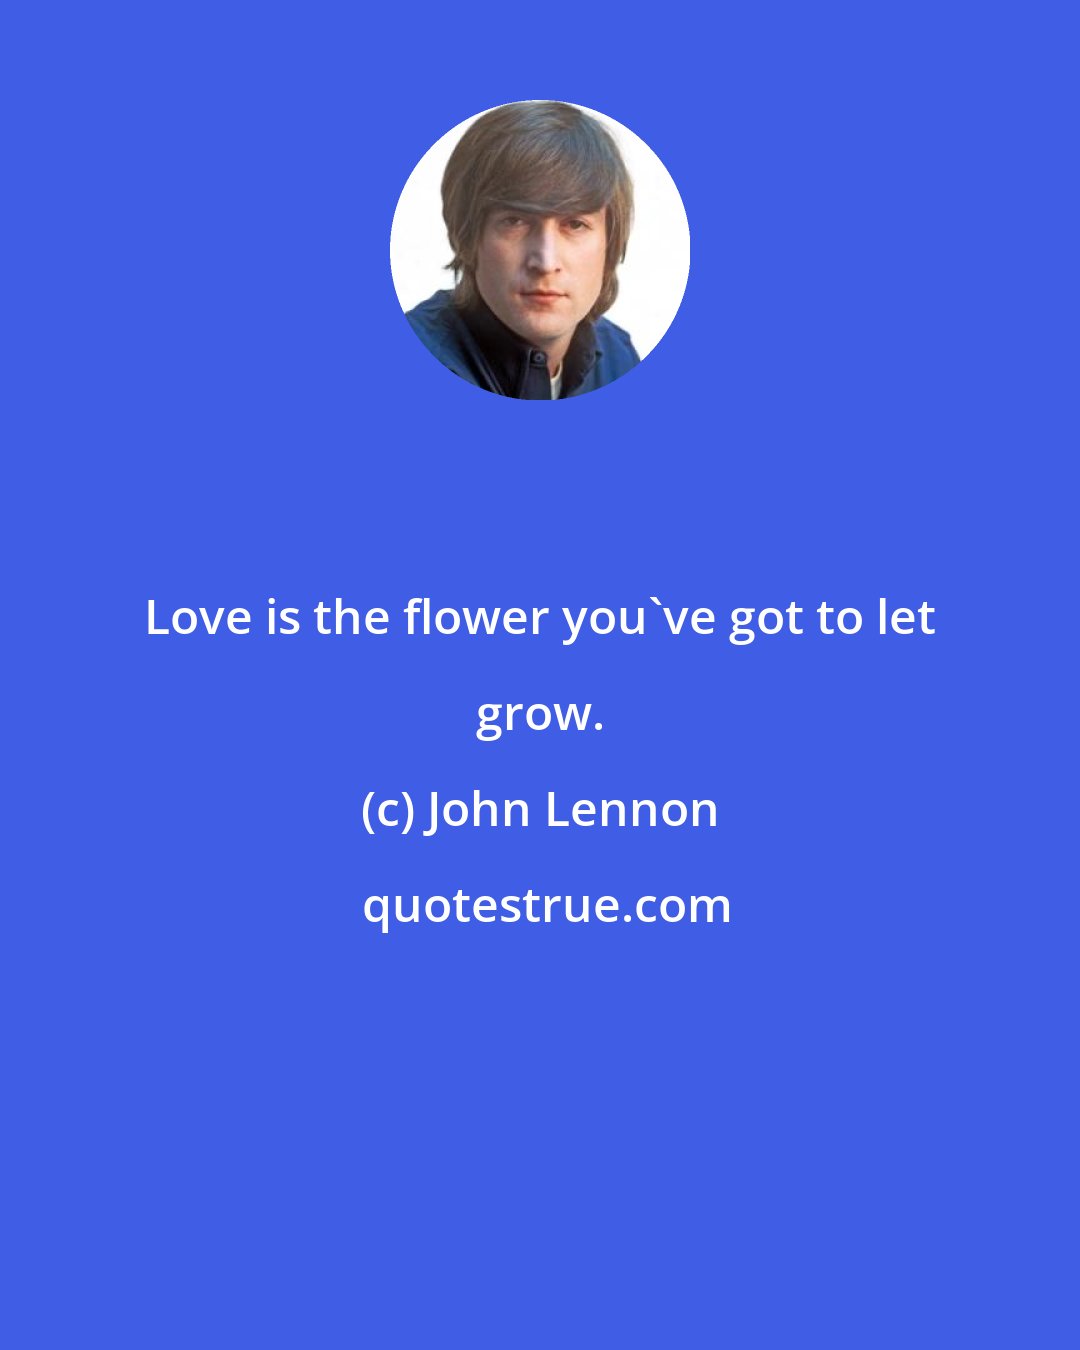 John Lennon: Love is the flower you've got to let grow.